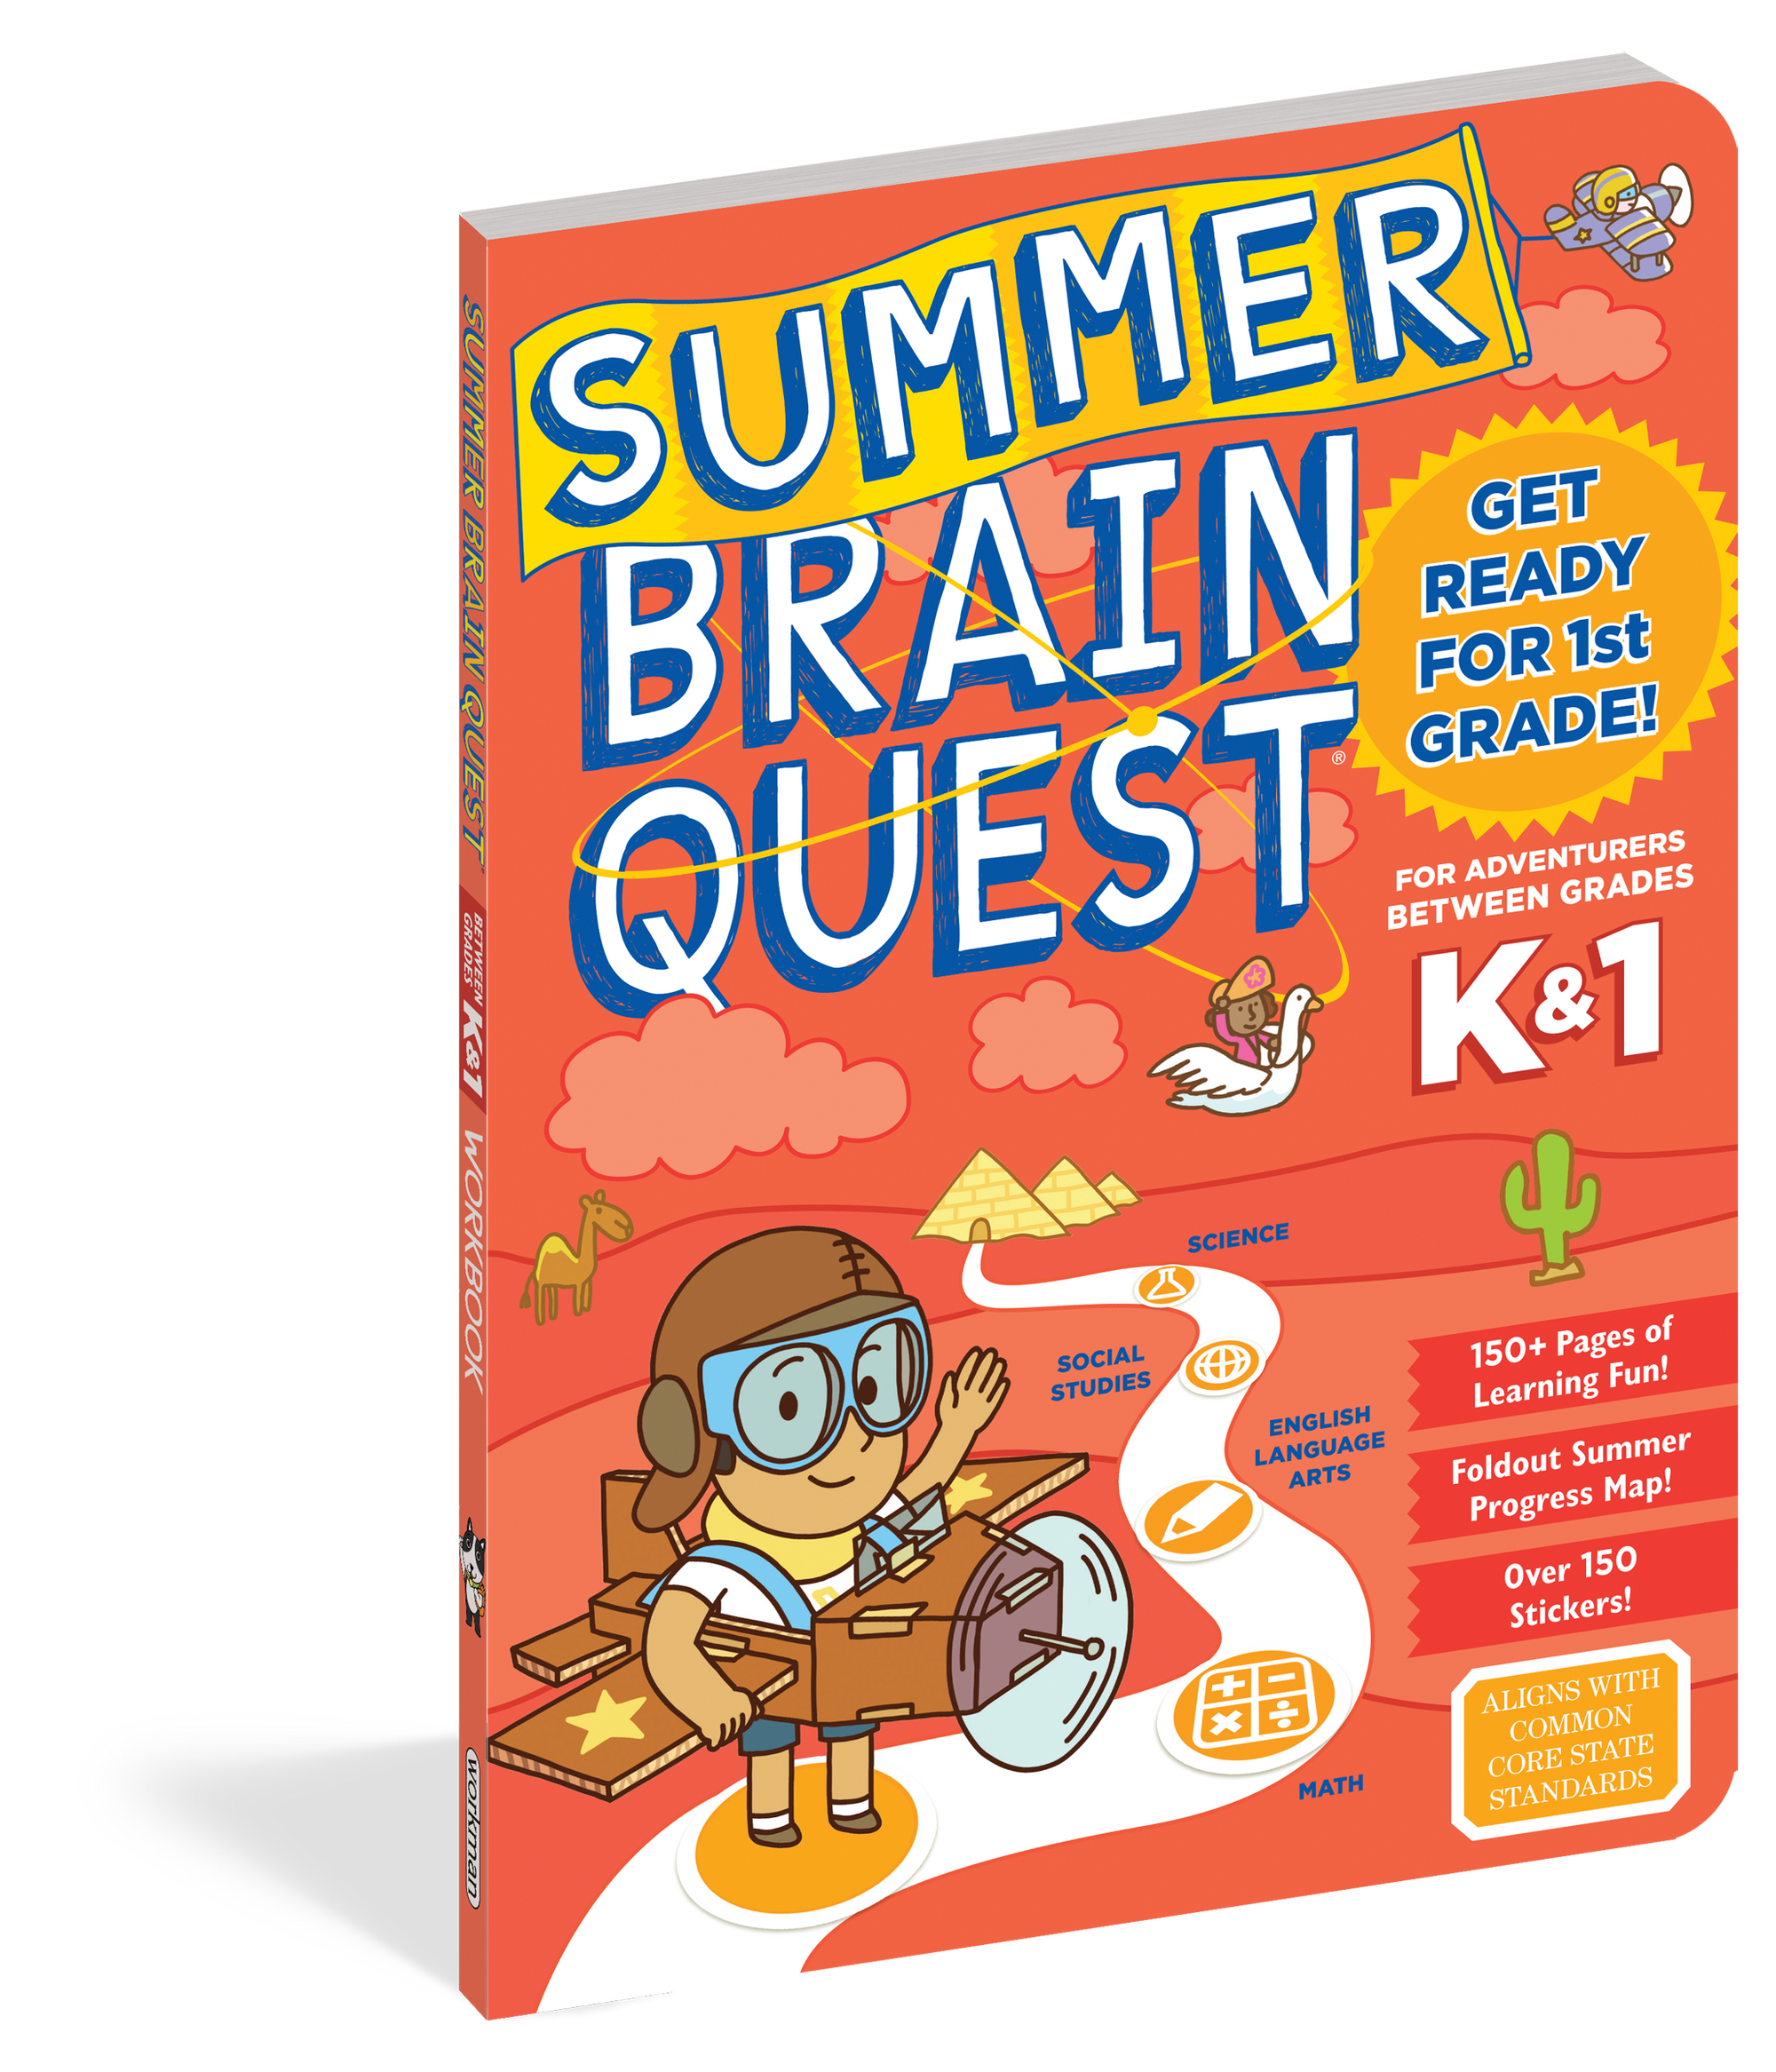 Brain Quest Summer Brain Quest: Between Grades K & 1